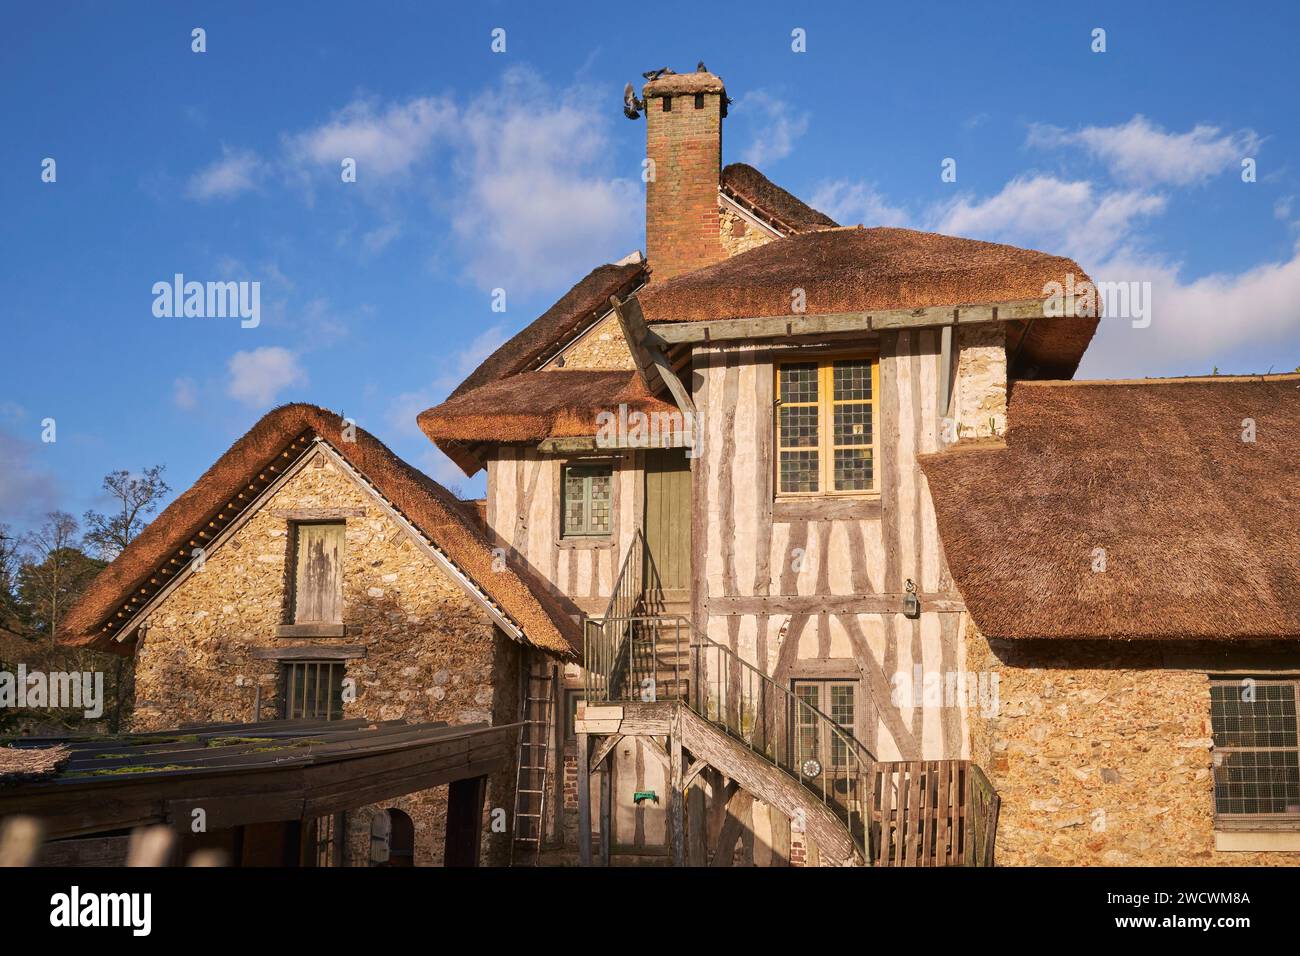 Frankreich, Yvelines, Versailles, Schloss von Versailles, von der UNESCO zum Weltkulturerbe erklärt, Hameau de la reine (Königin Hamlet), der Bauernhof Stockfoto